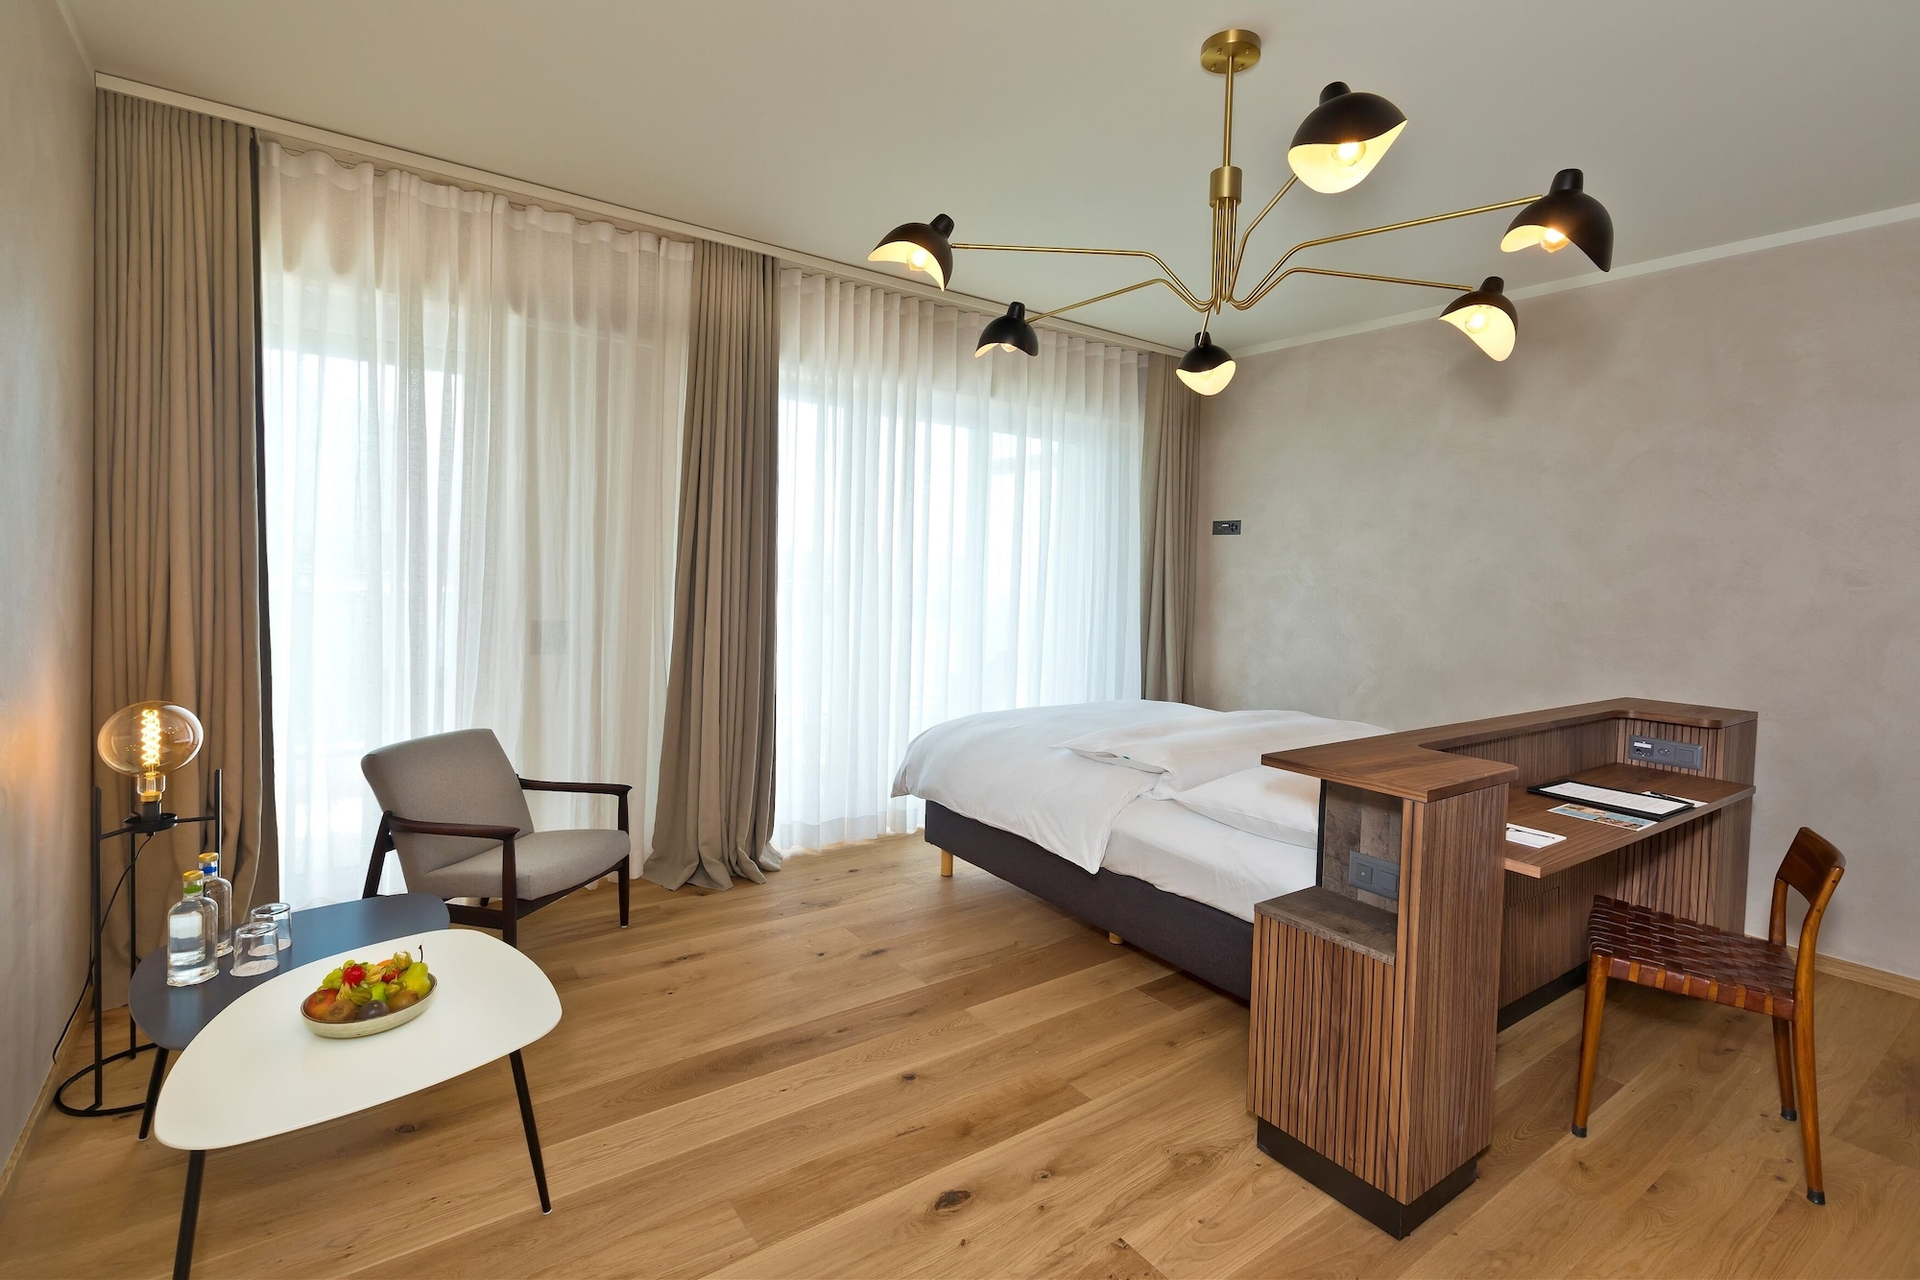 Bedroom 4, Hotel La Palma au Lac, Locarno